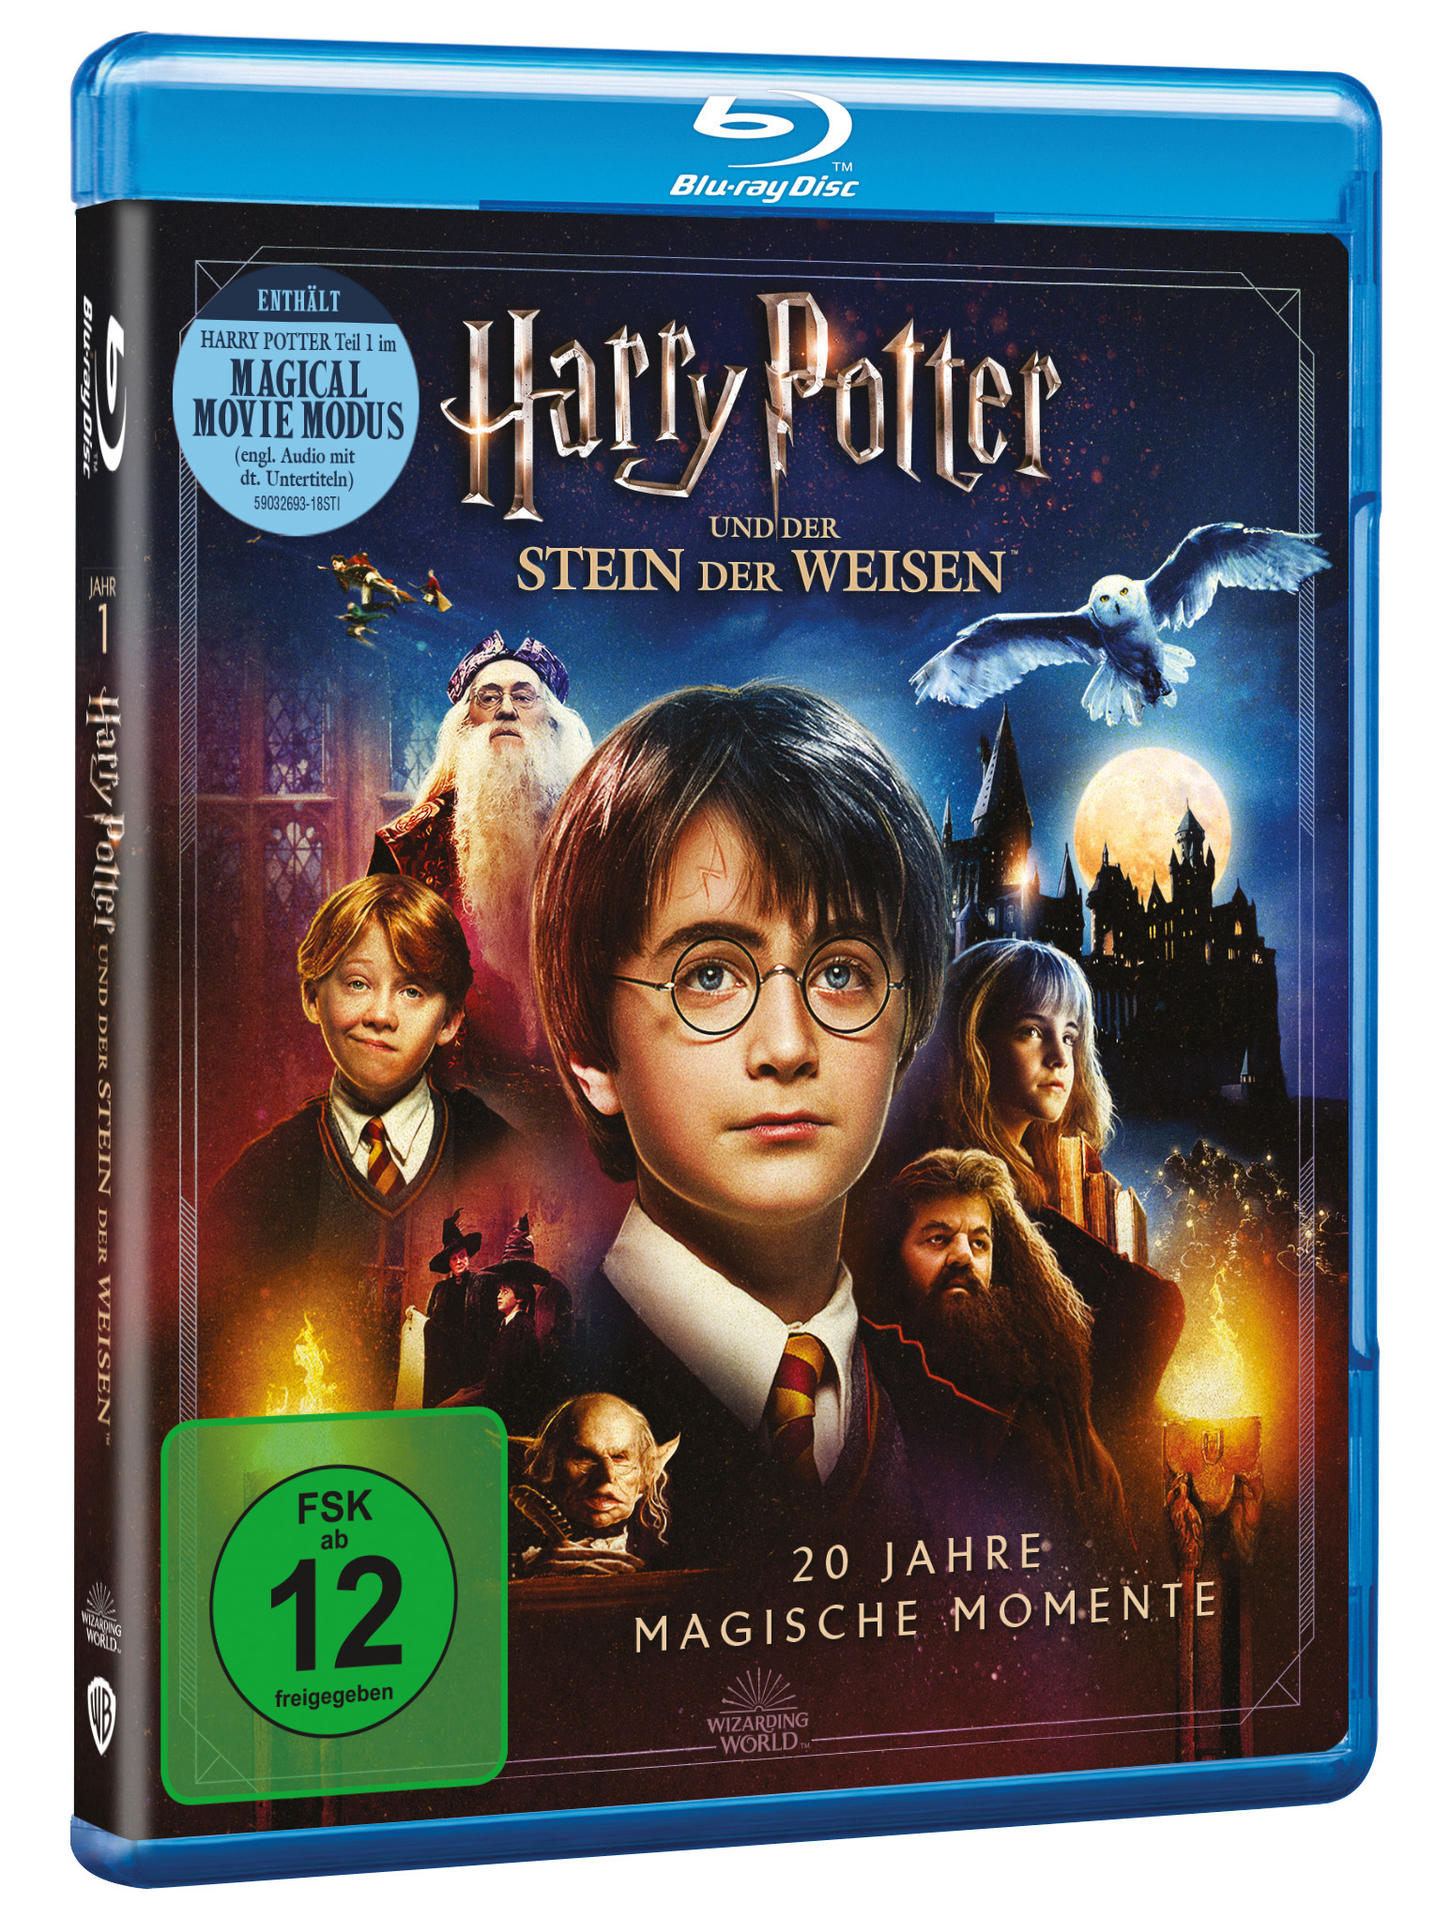 Harry Potter Blu-ray Weisen der der Stein und